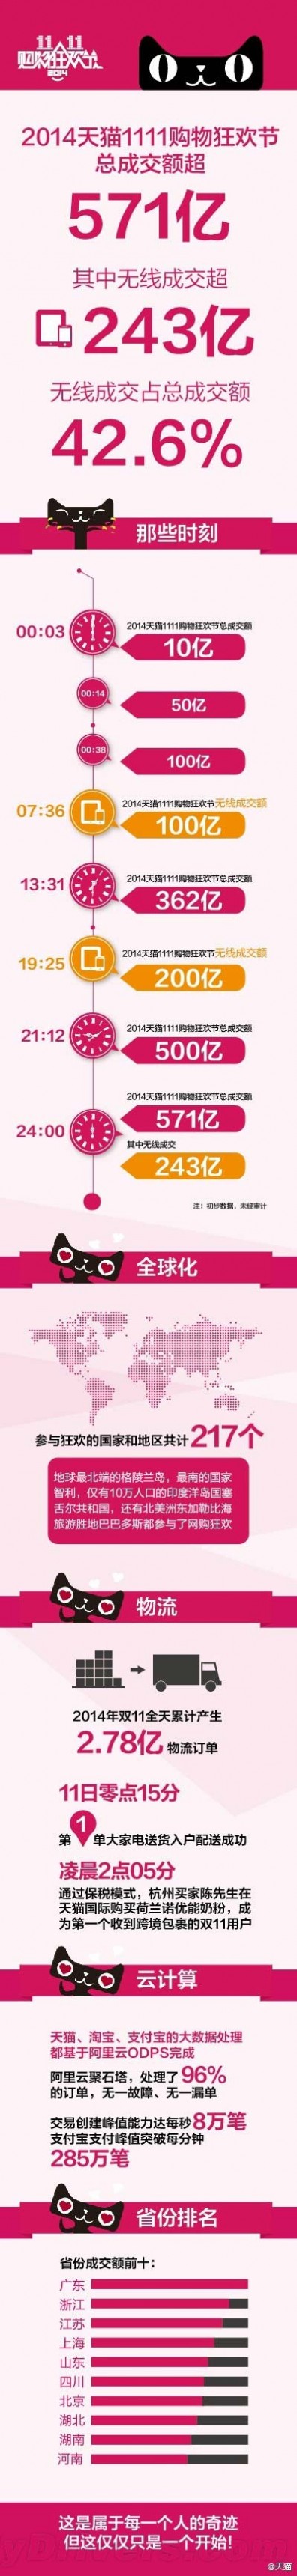 2014双11数据 2014阿里天猫双11最全总结：广州最土豪